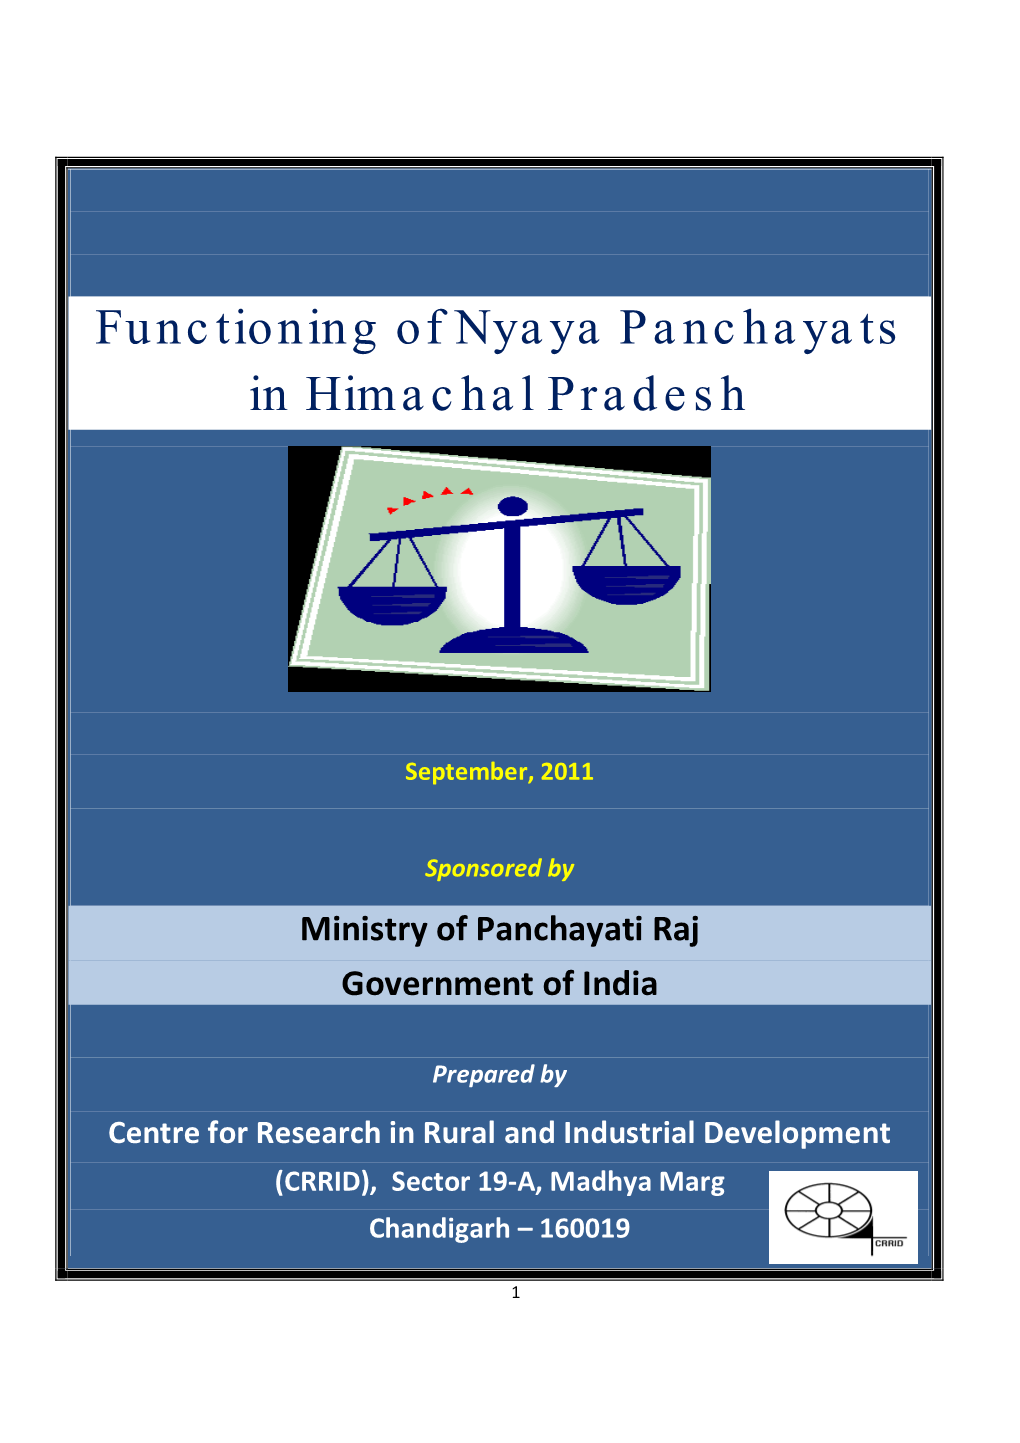 Functioning of Nyaya Panchayats in Himachal Pradesh